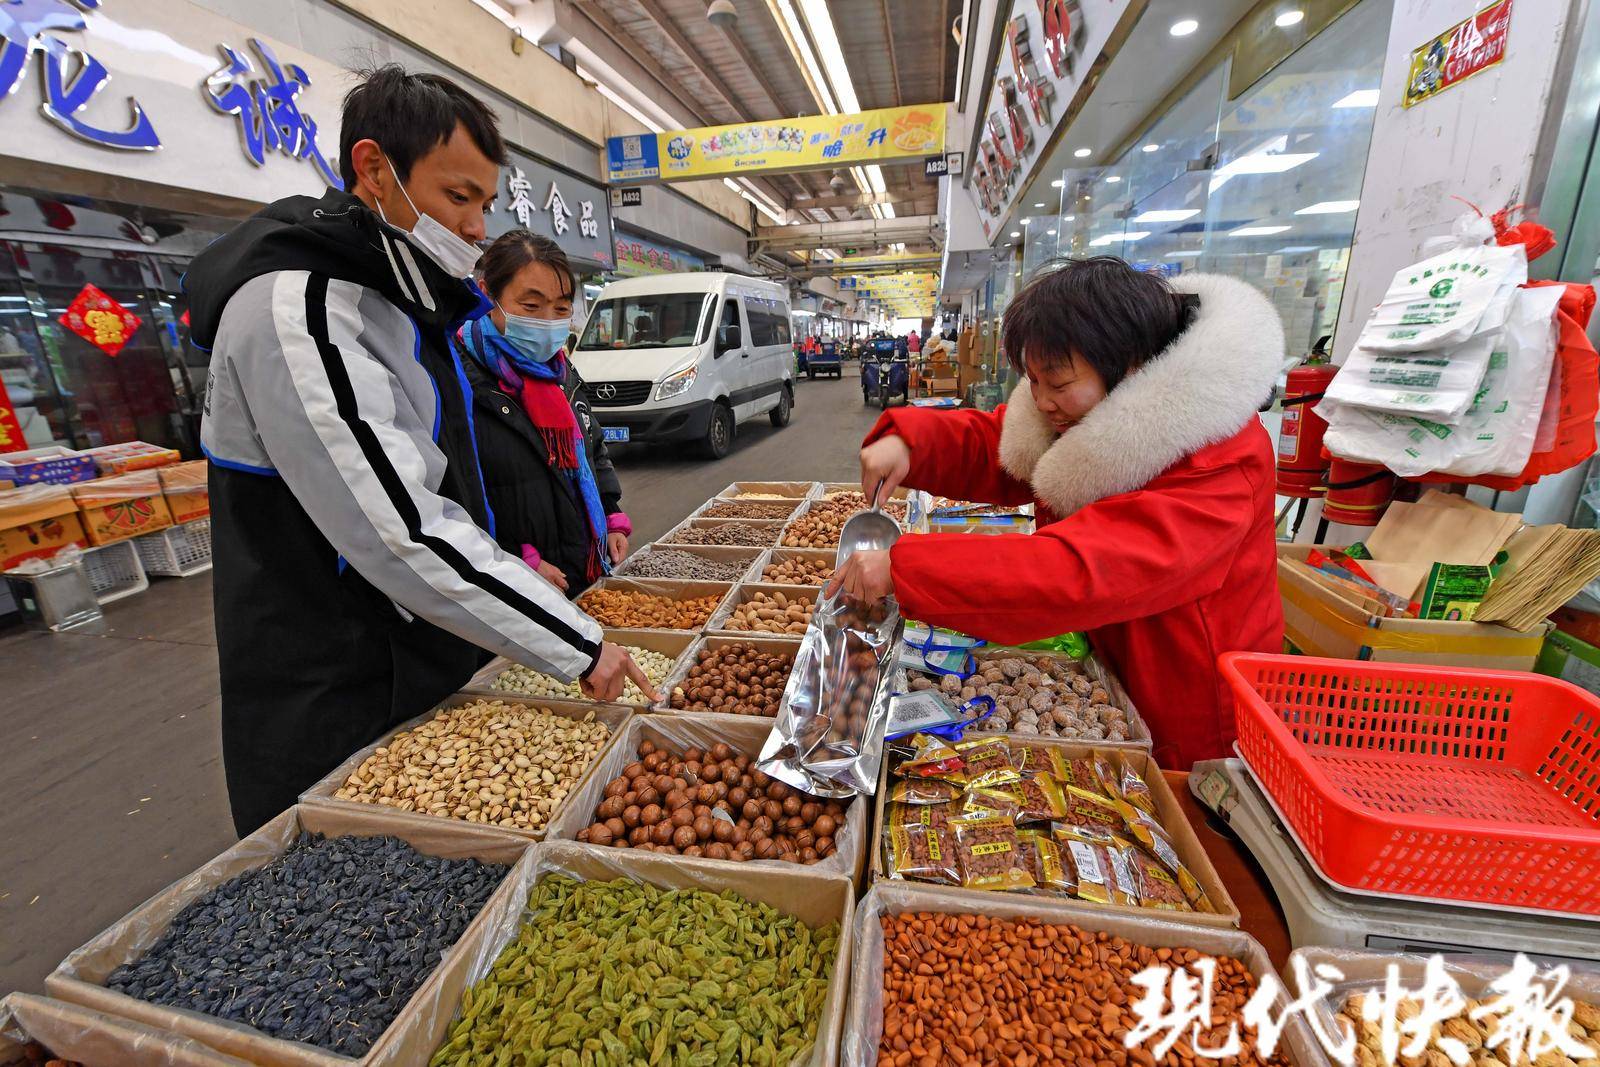 在南京做坚果生意20多年,一身红色工作服的老板娘正站在一箱箱炒货前